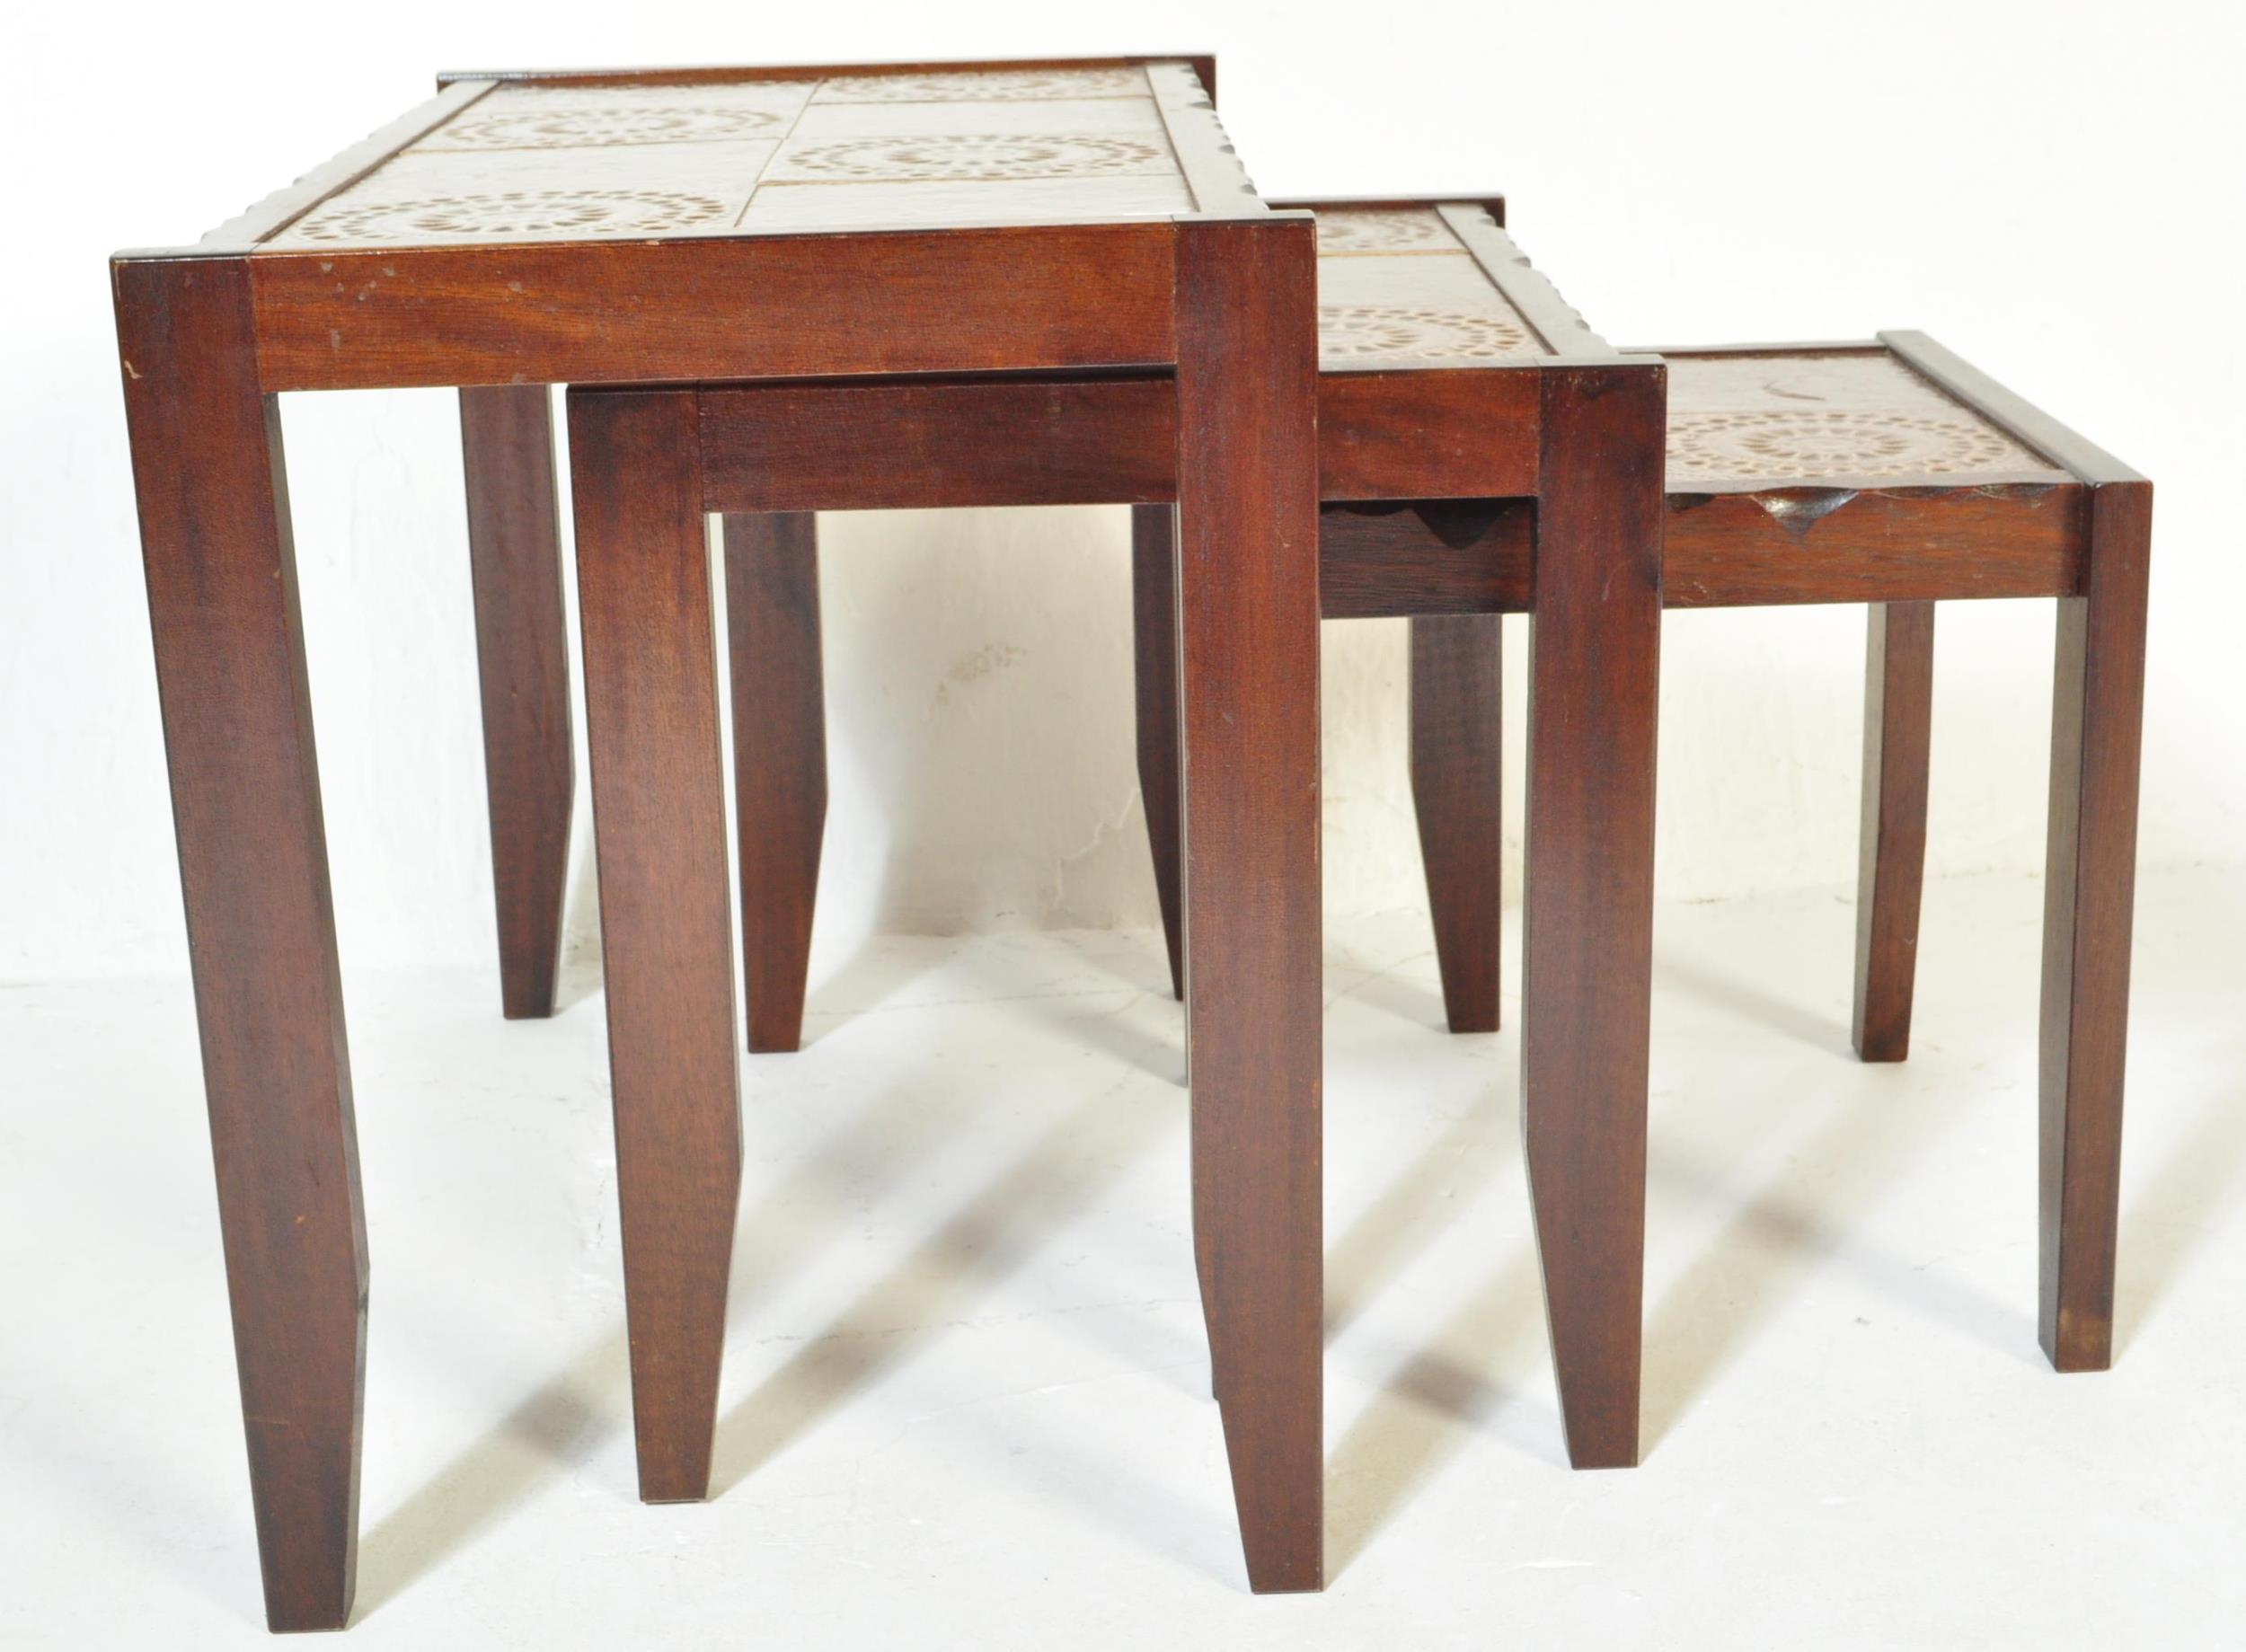 MID CENTURY DANISH INSPIRED TEAK & TILE TOP NEST OF TABLES